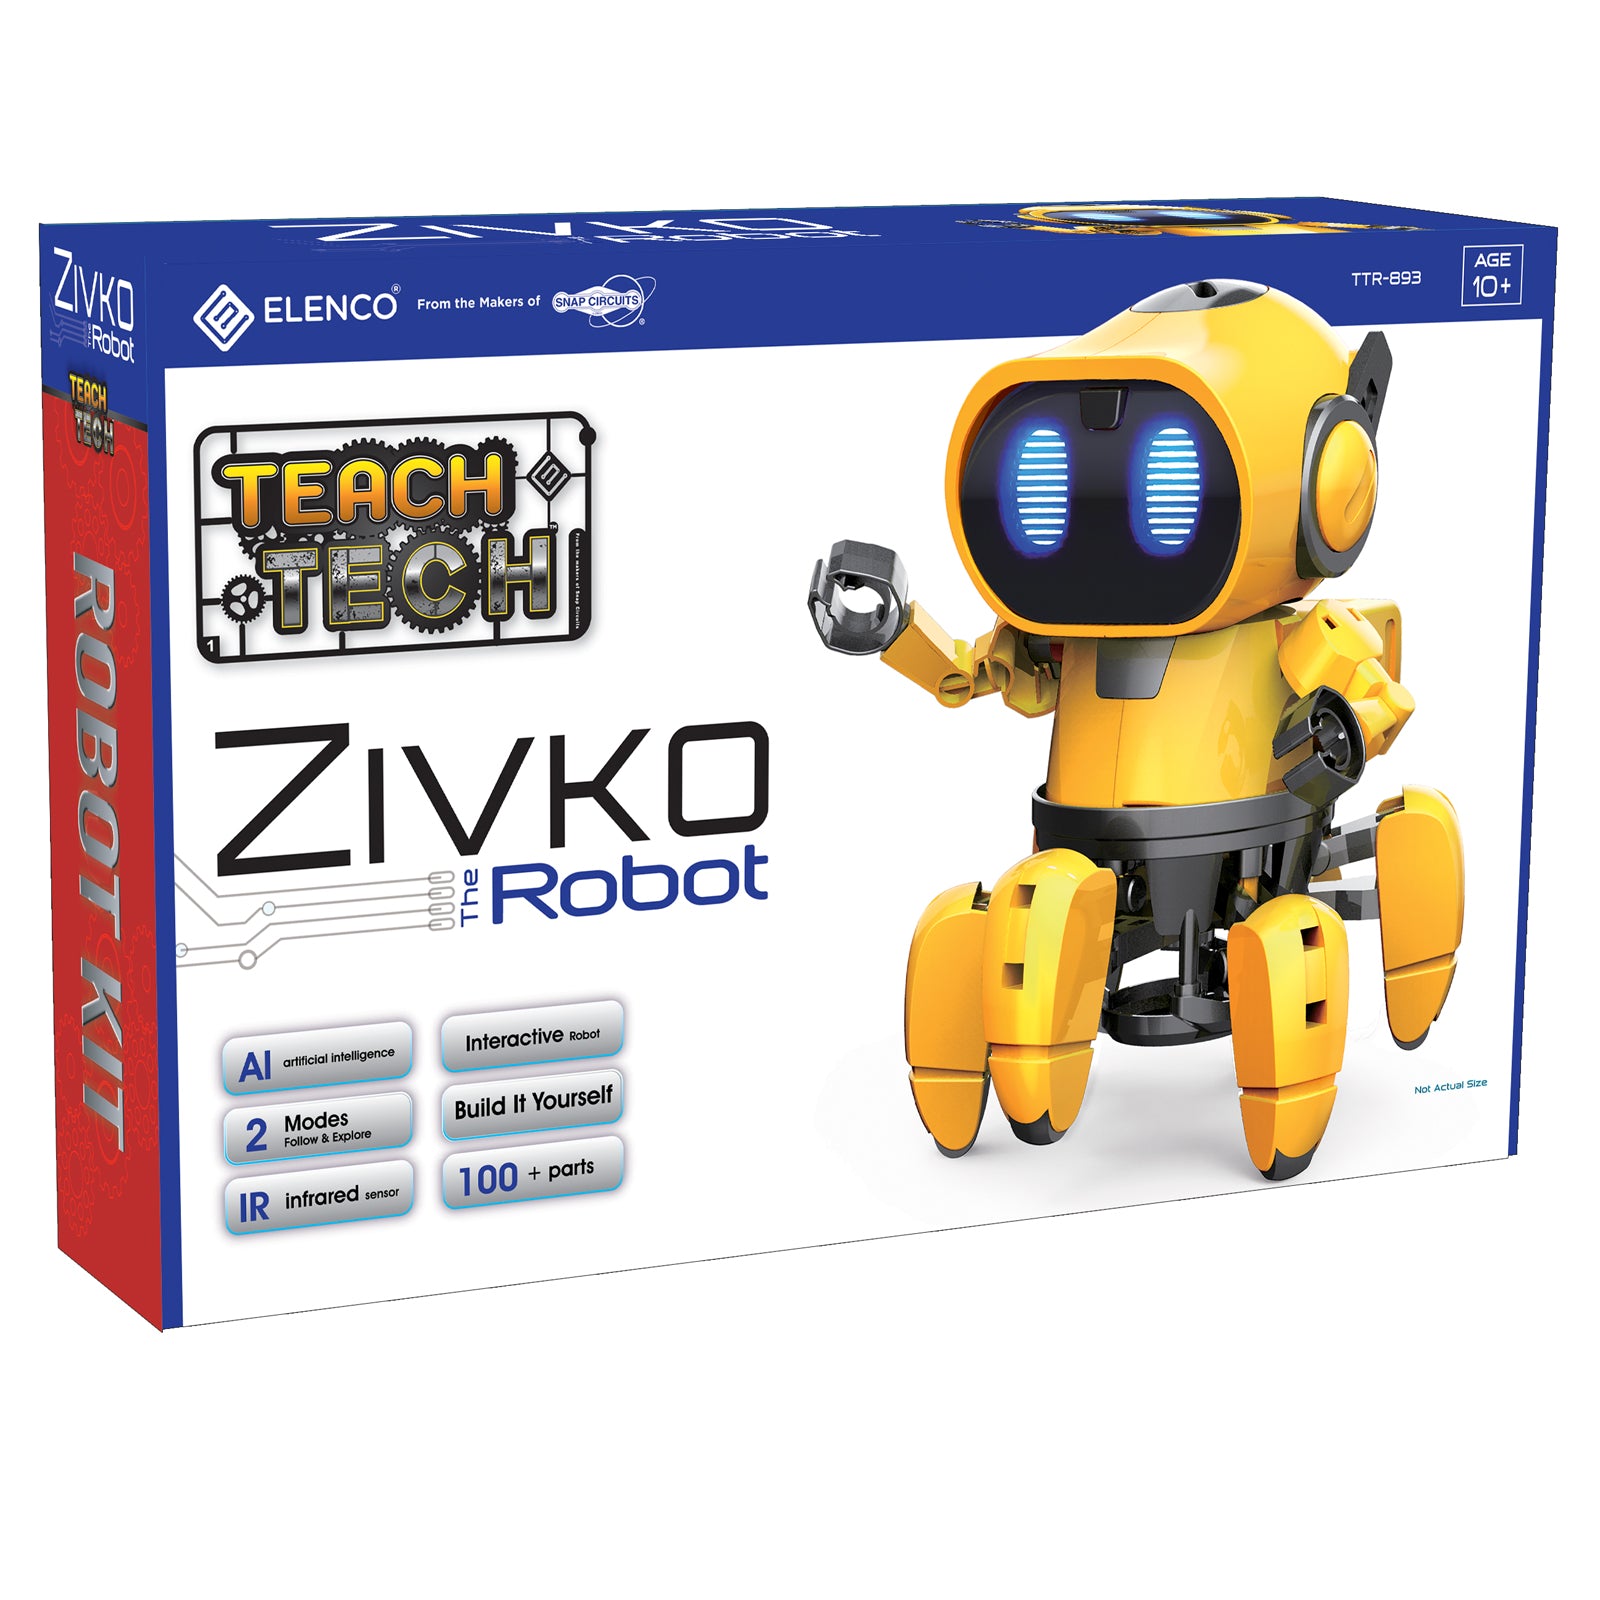 TEACH TECH™ Zivko the Robot Kit - A1 School Supplies